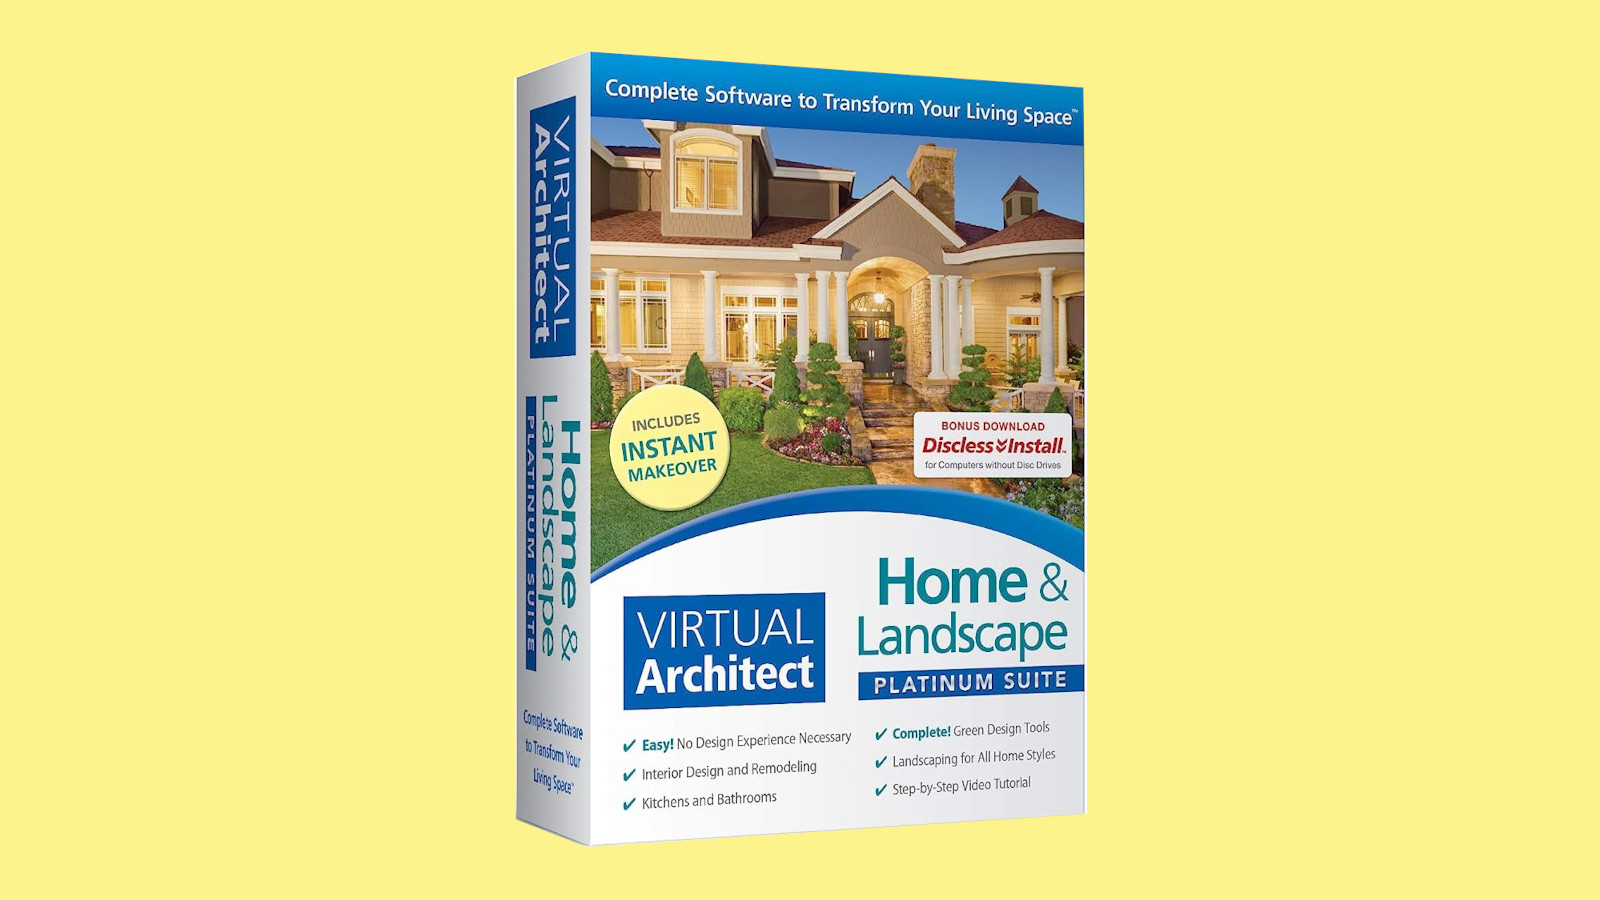 Virtual Architect Home & Landscape Platinum Suite CD Key 103.45$